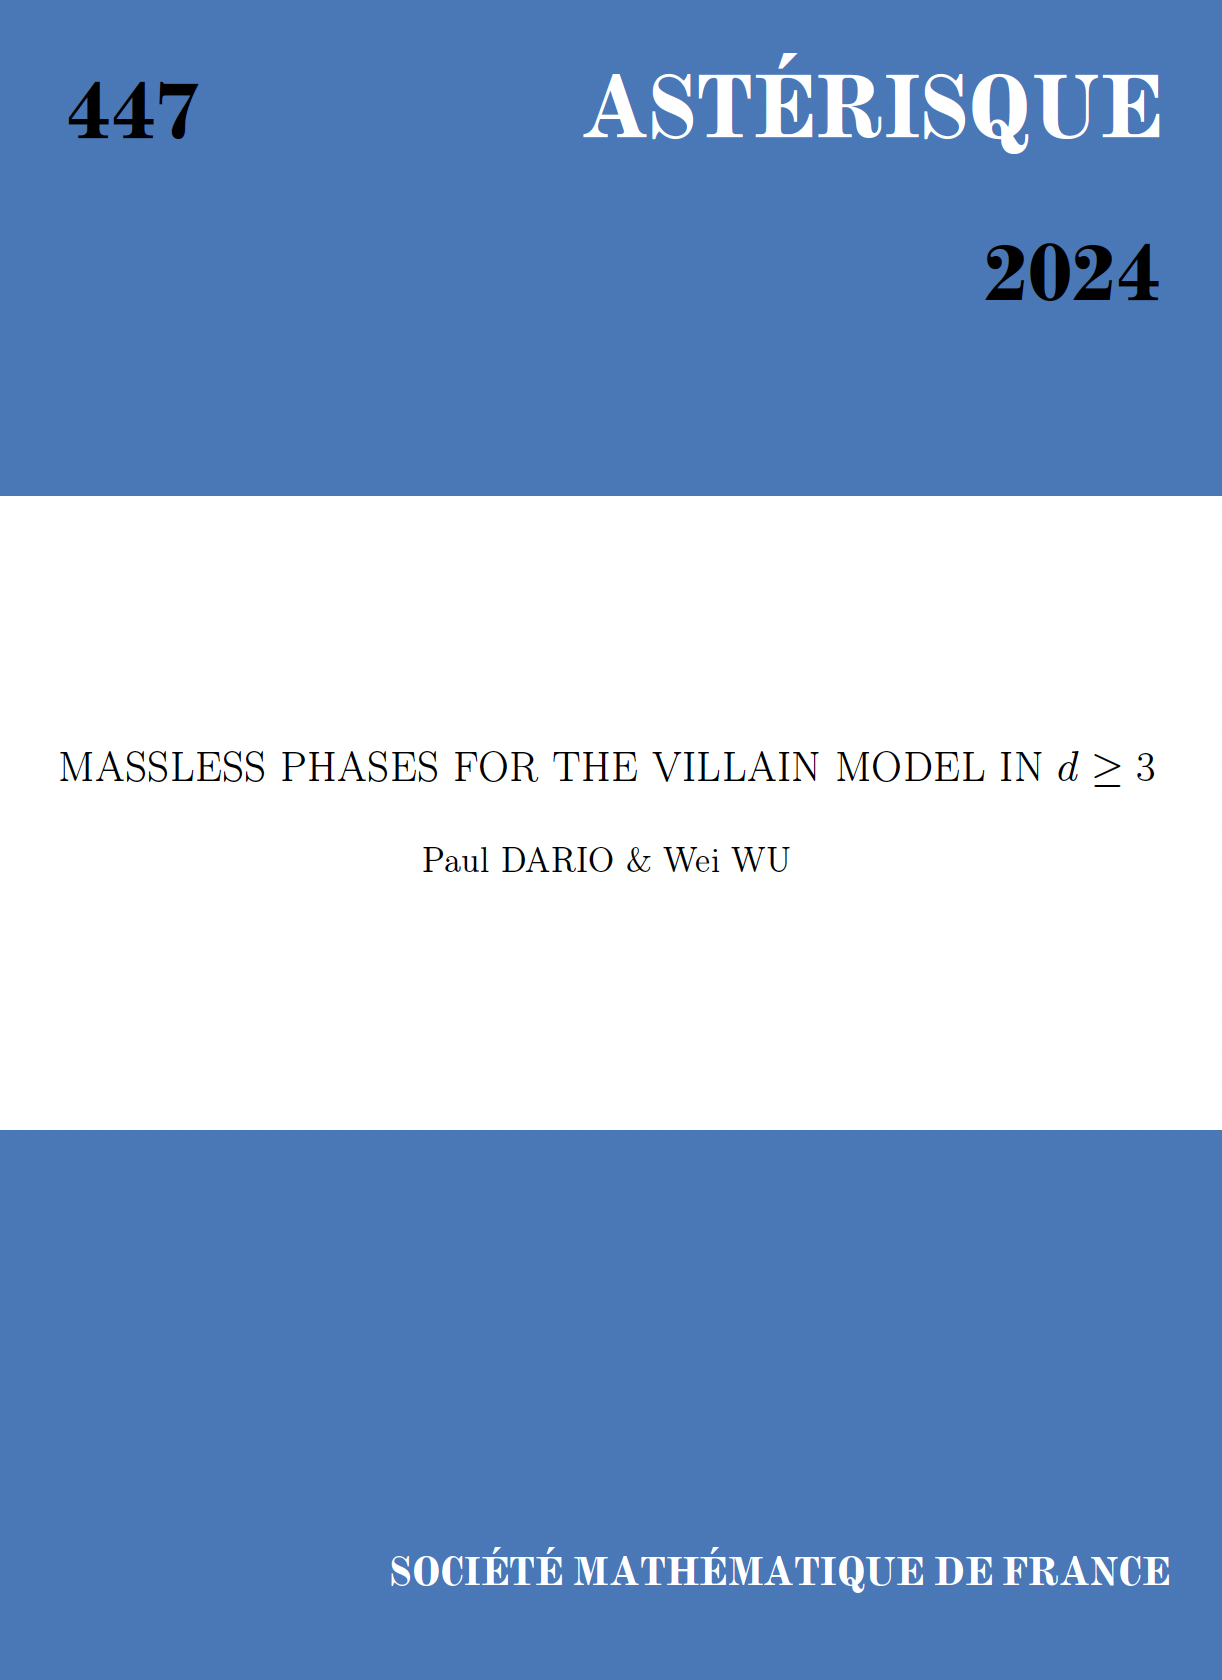 Massless phases for the Villain model in d ≥ 3